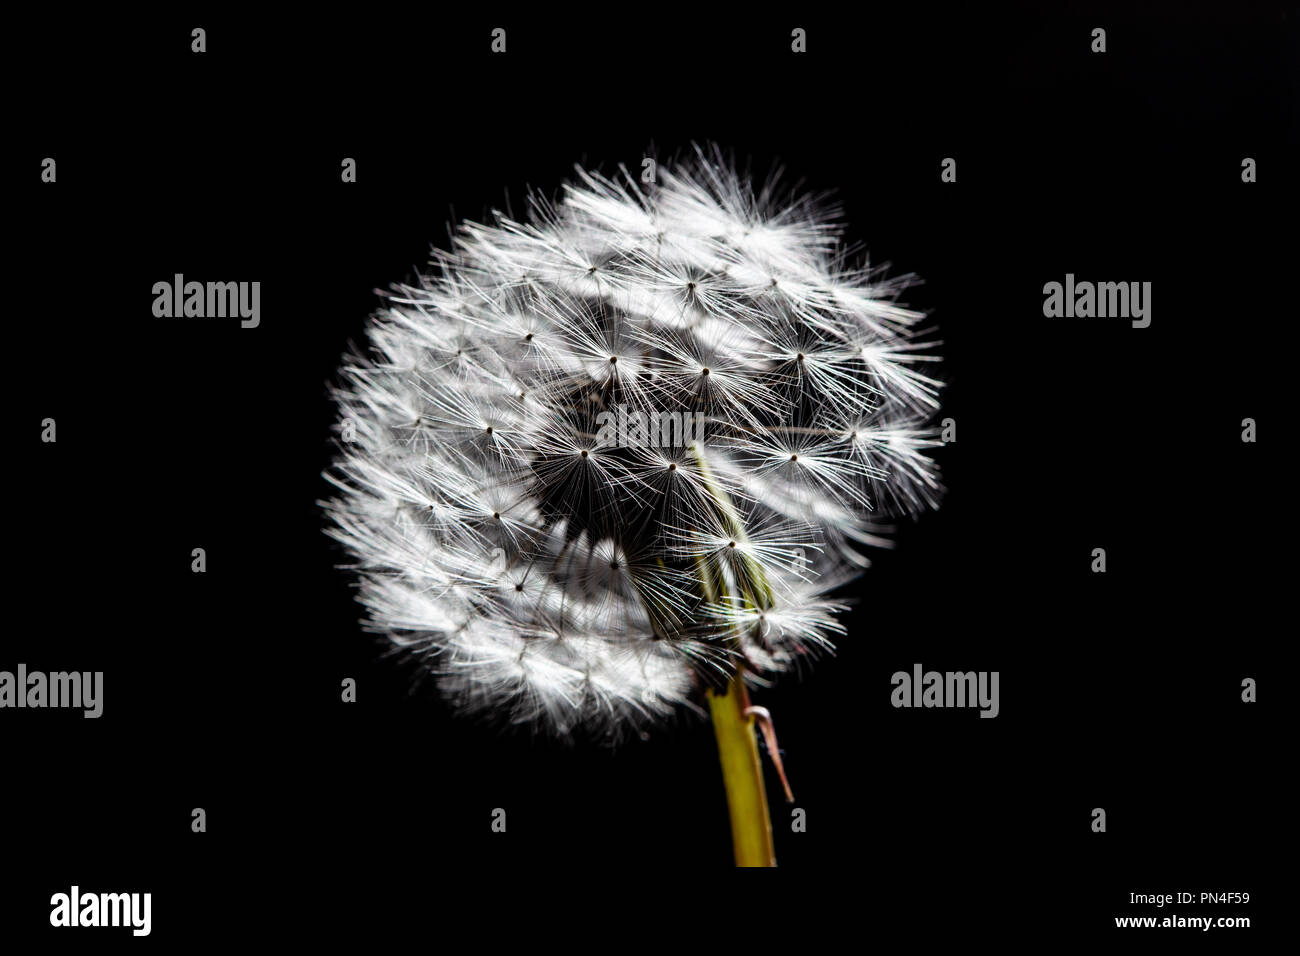 Dandelion isolated on black background Stock Photo